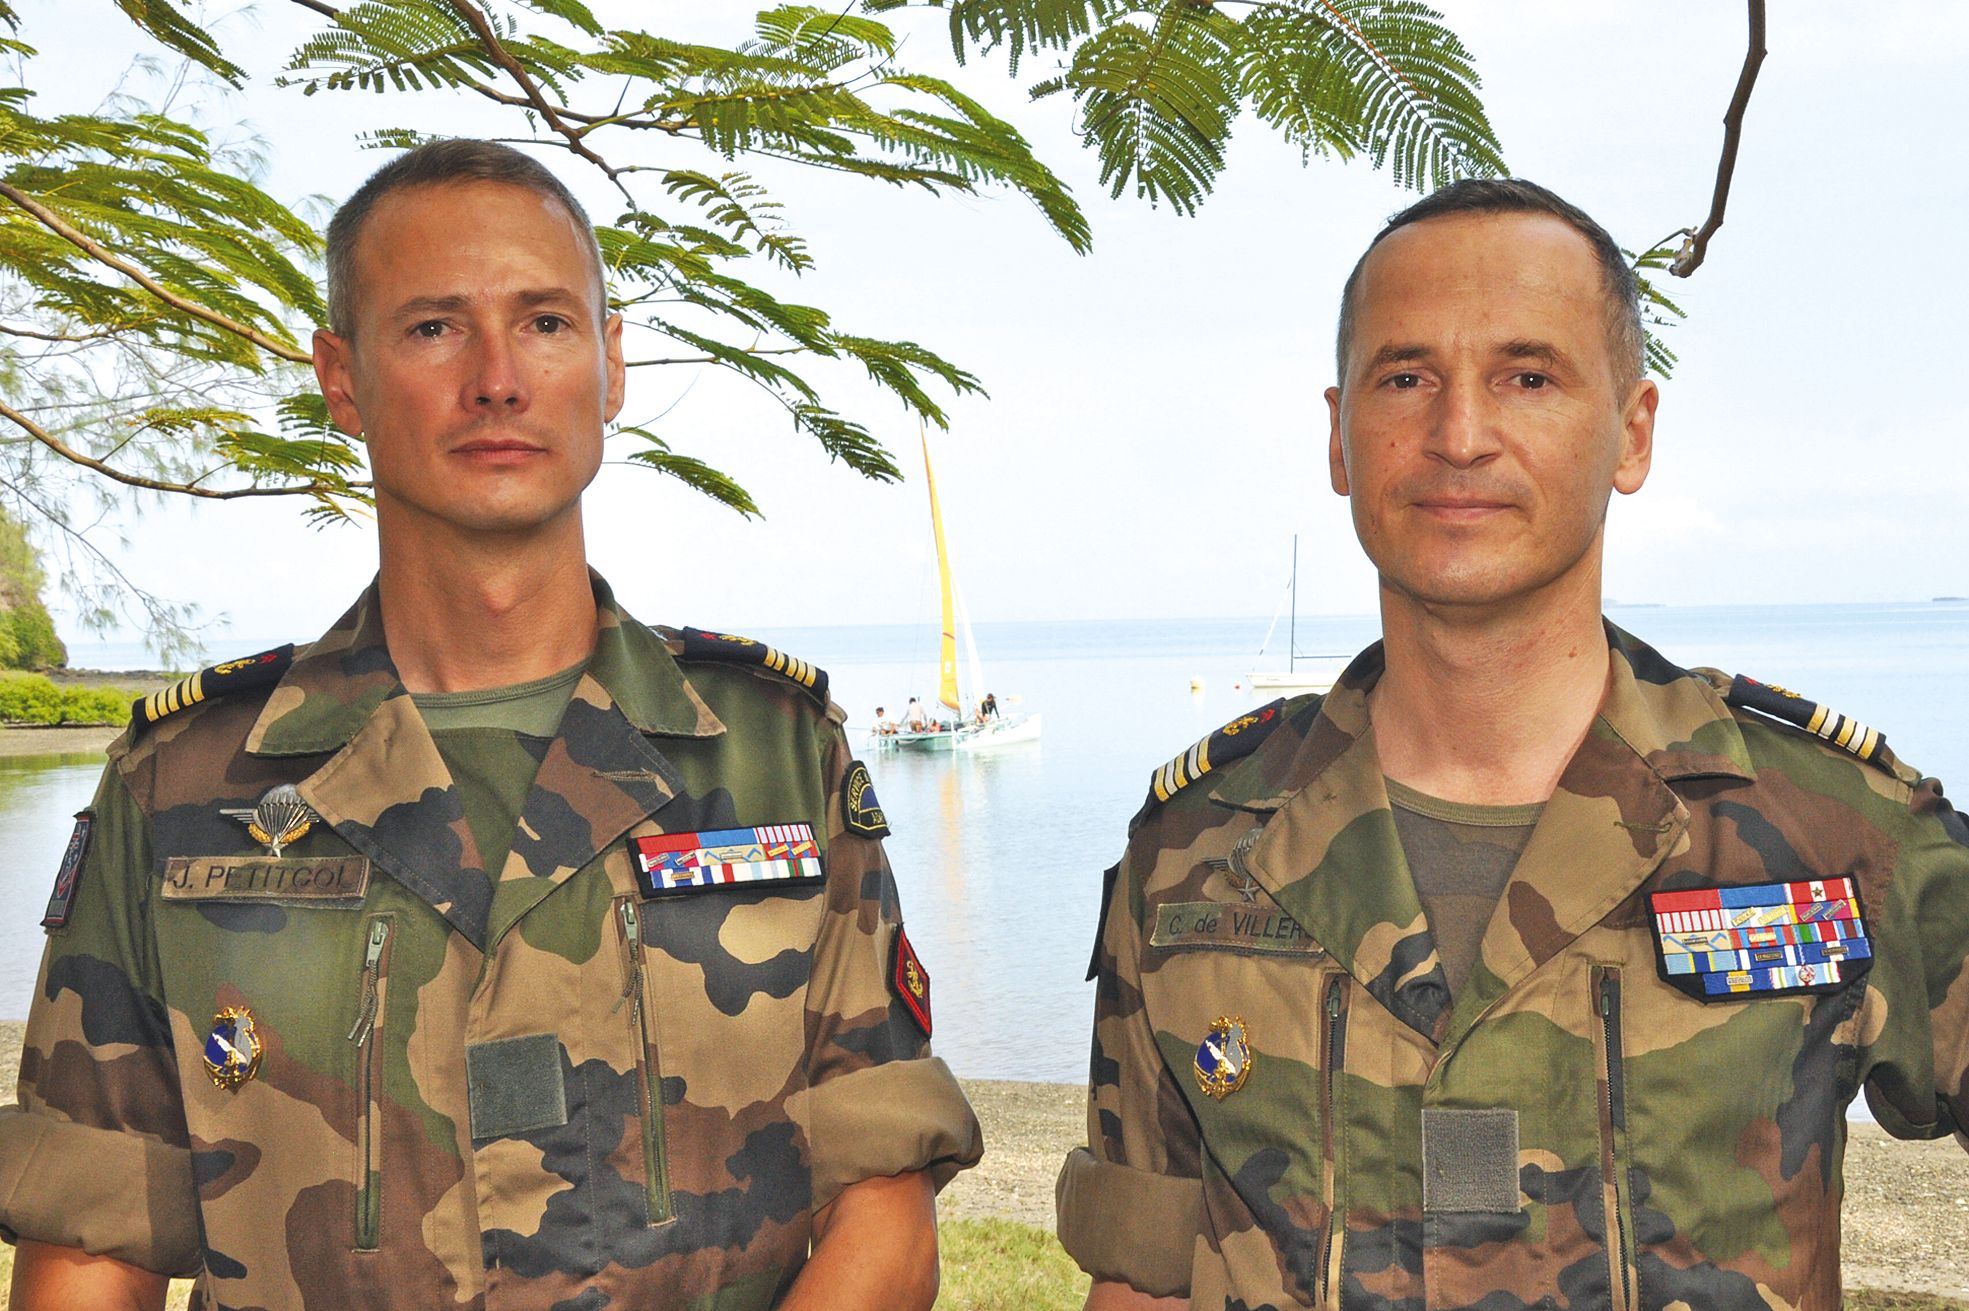 Le lieutenant-colonel Christian de Villers (à droite) a succédé au colonel Petitcol  (à gauche), prenant ainsi le commandement du RSMA-NC.